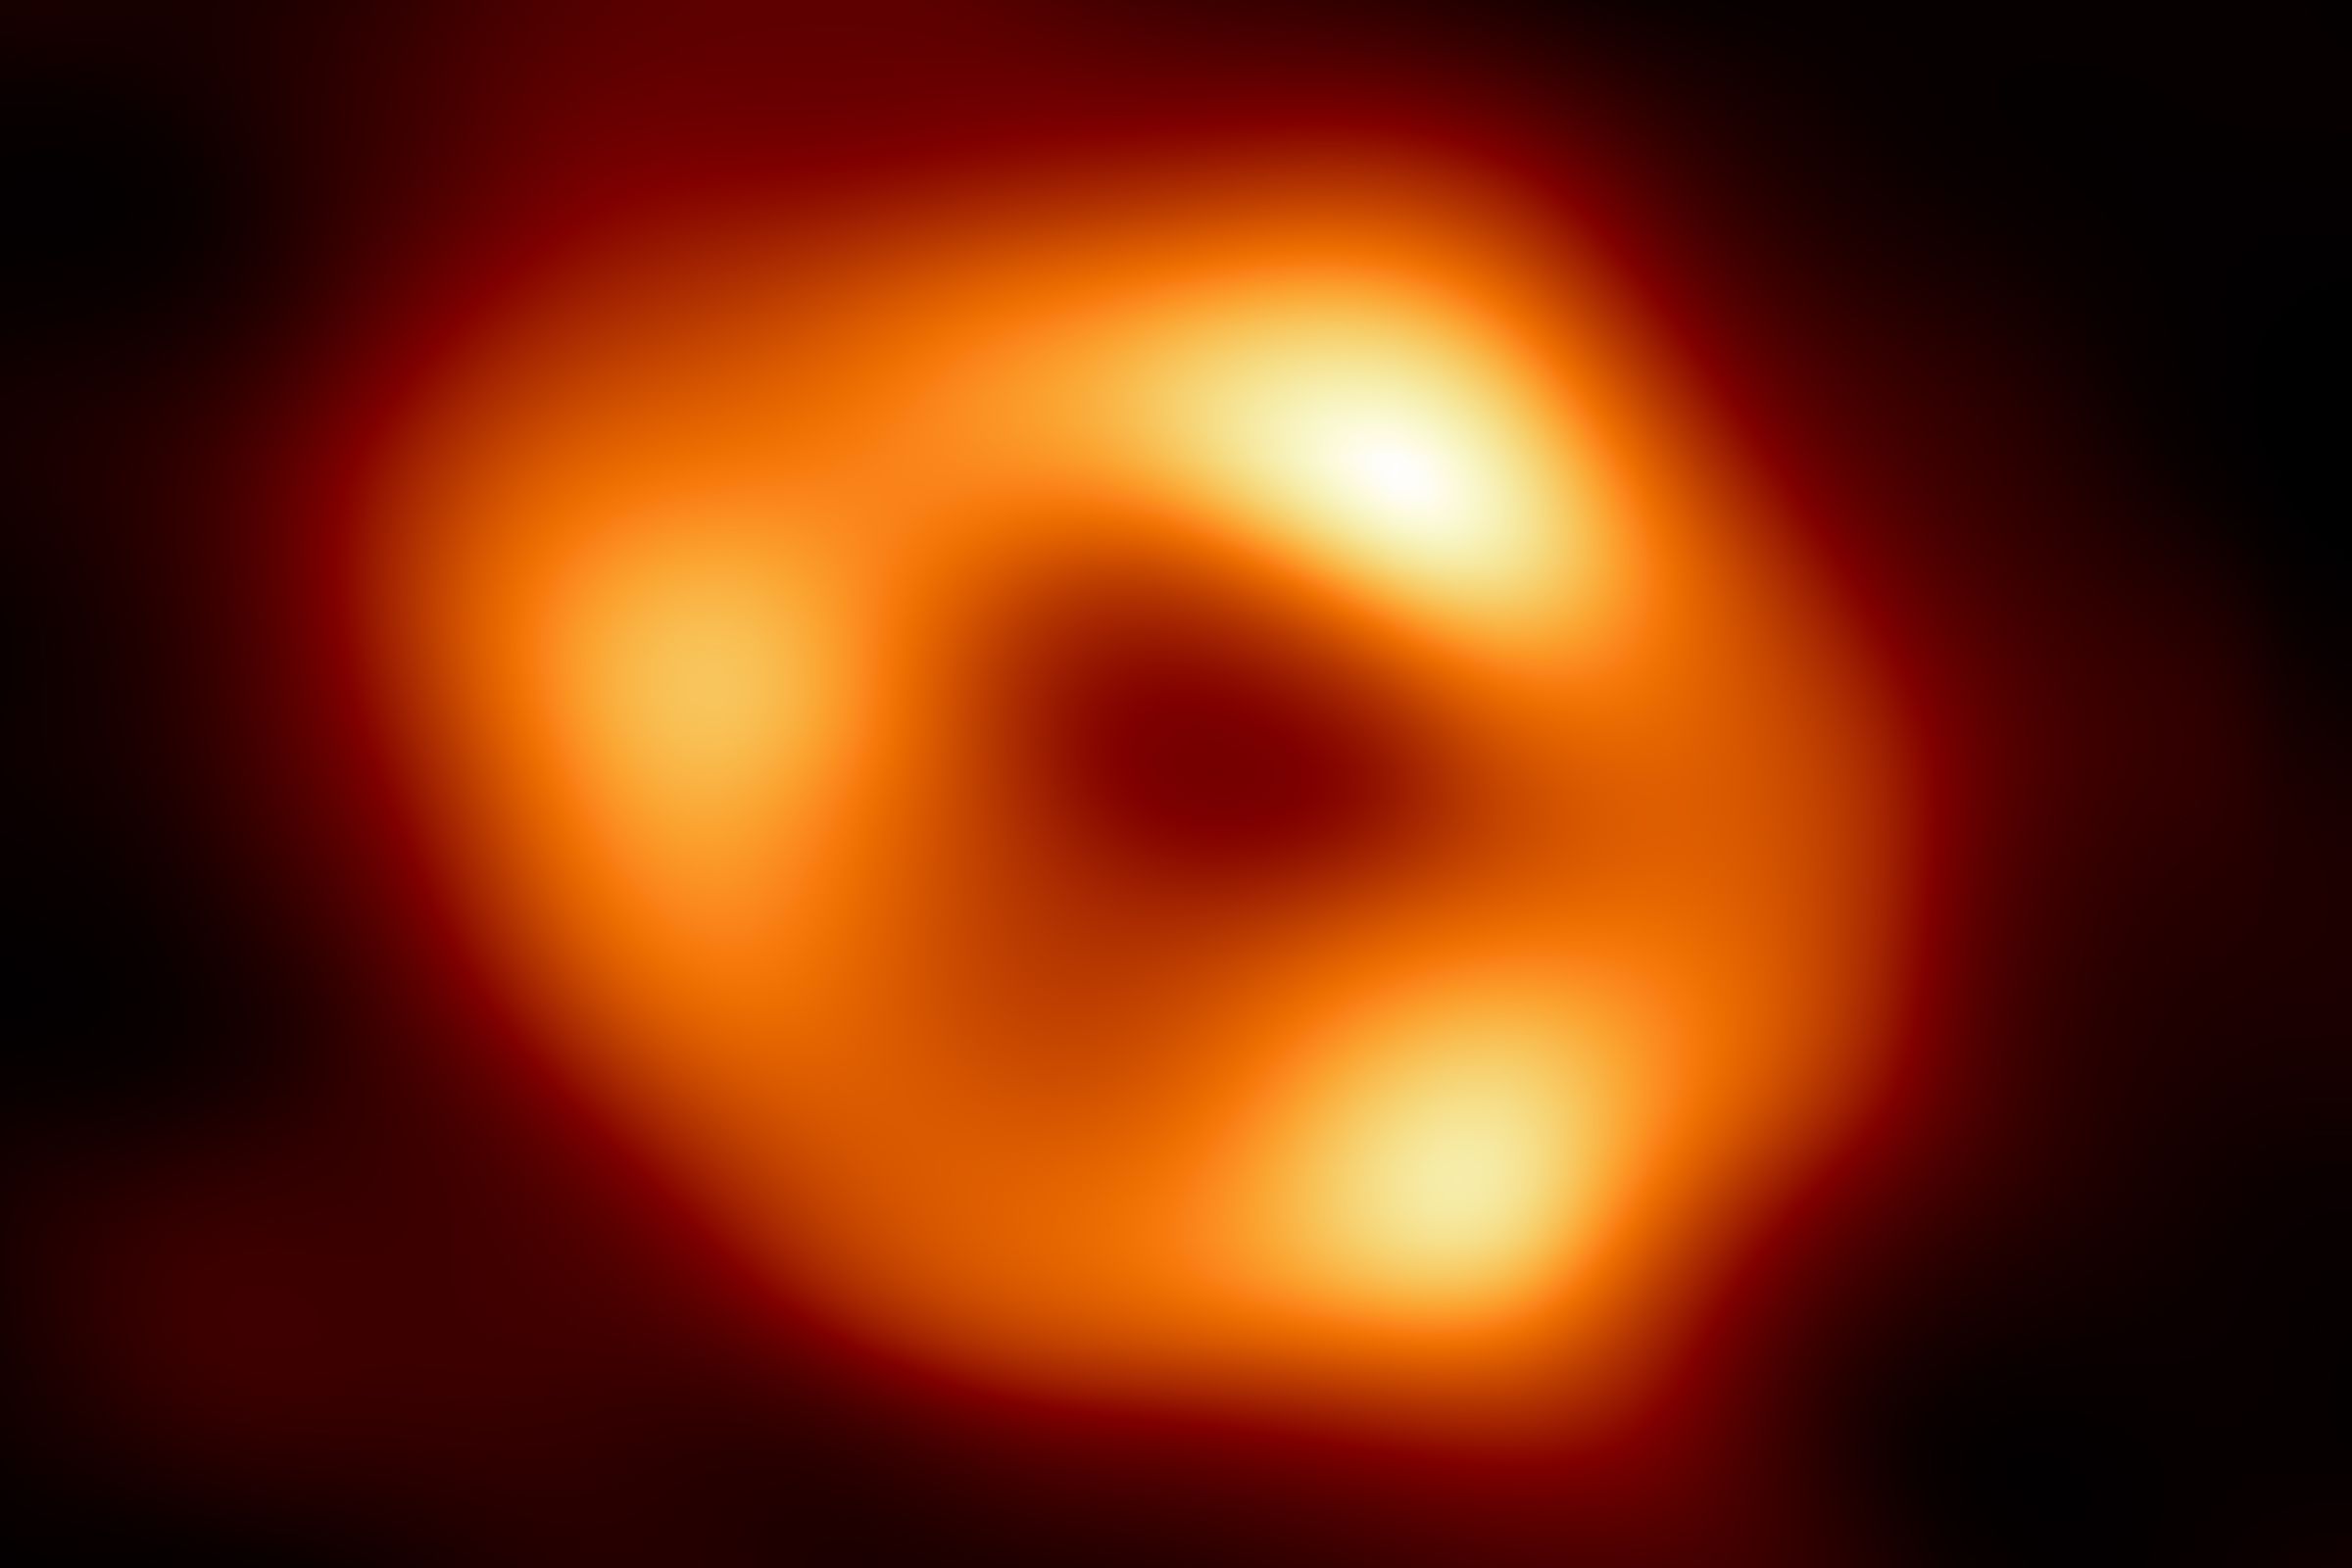 A bright orange ‘donut’ against a dark background